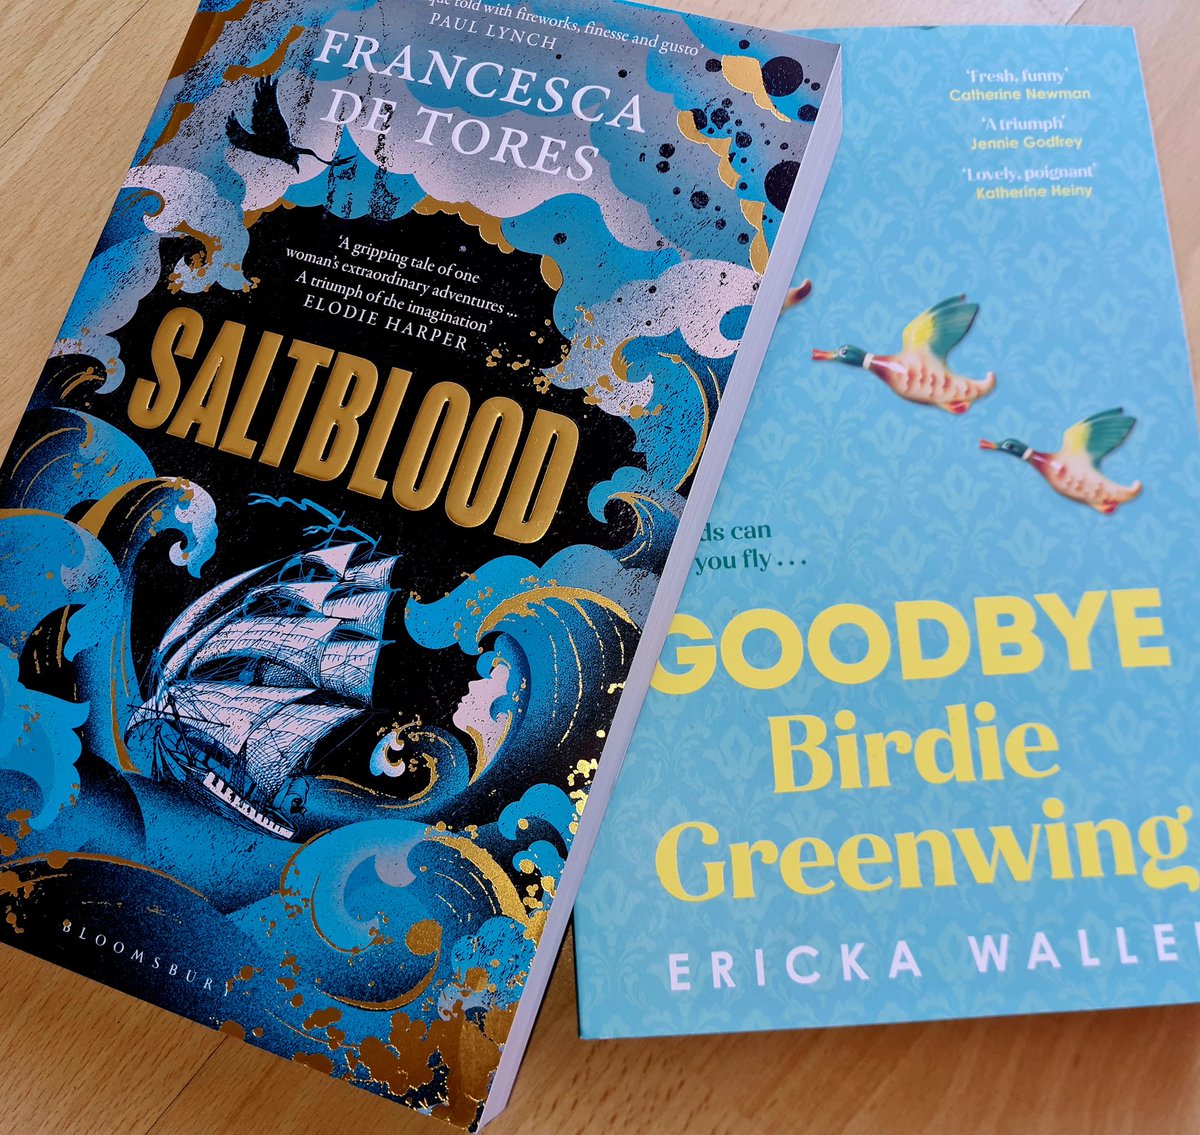 More book beauties! 💙📘#Saltblood #FrancescaDeTorres #GoodbyeBirdieGreenwing #ErickaWaller #BookTwitter